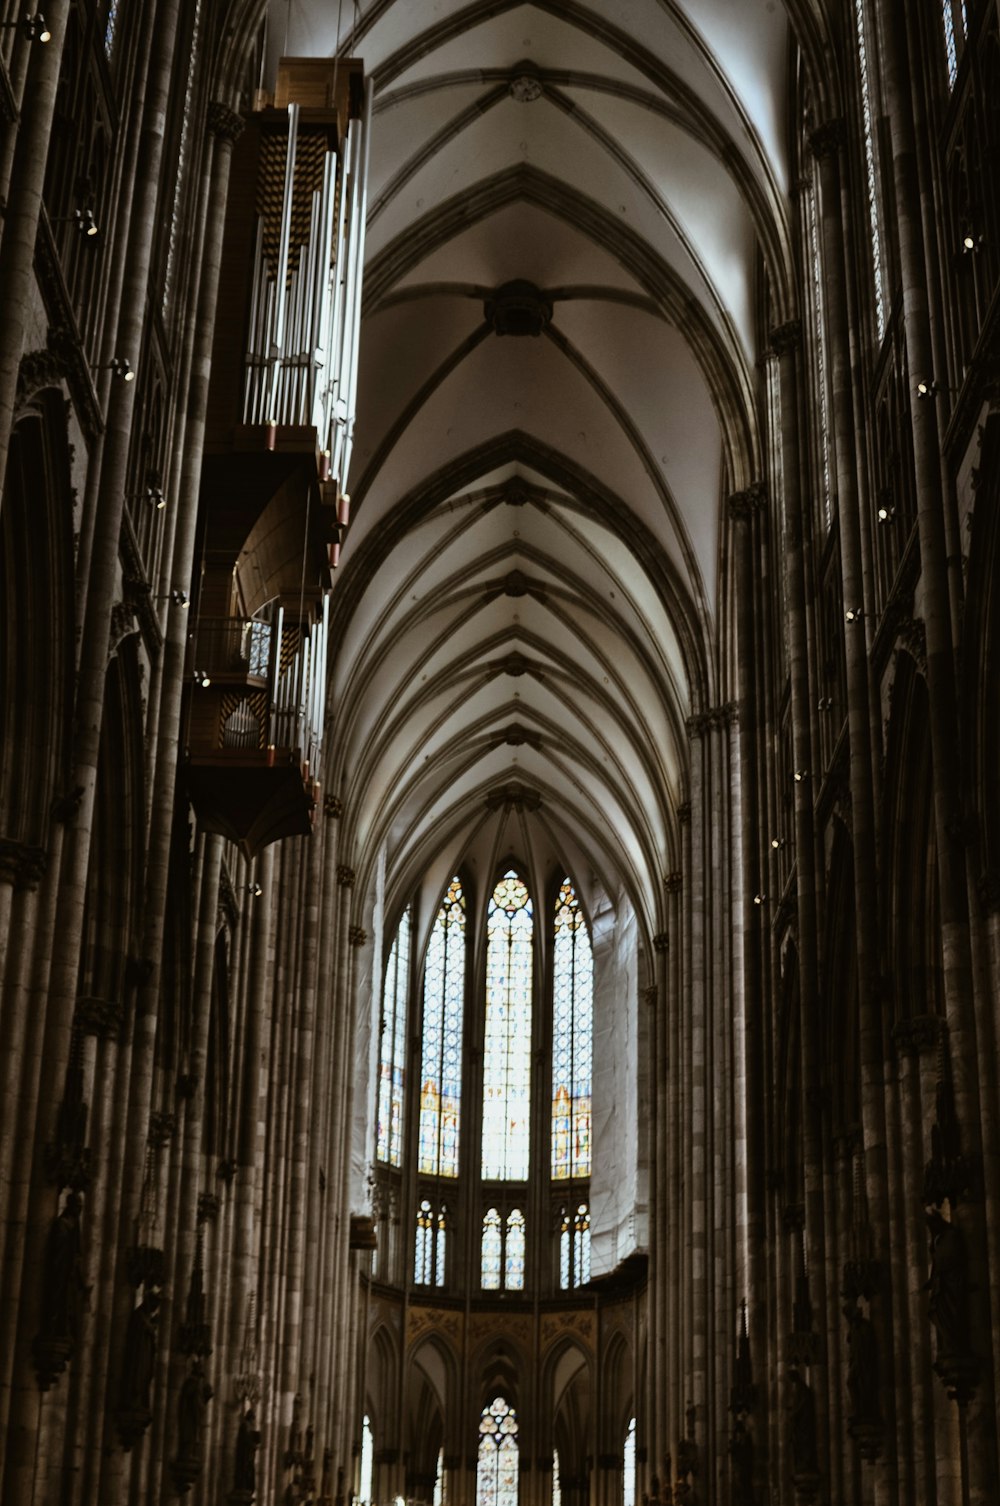 El interior de una gran catedral con techos altos